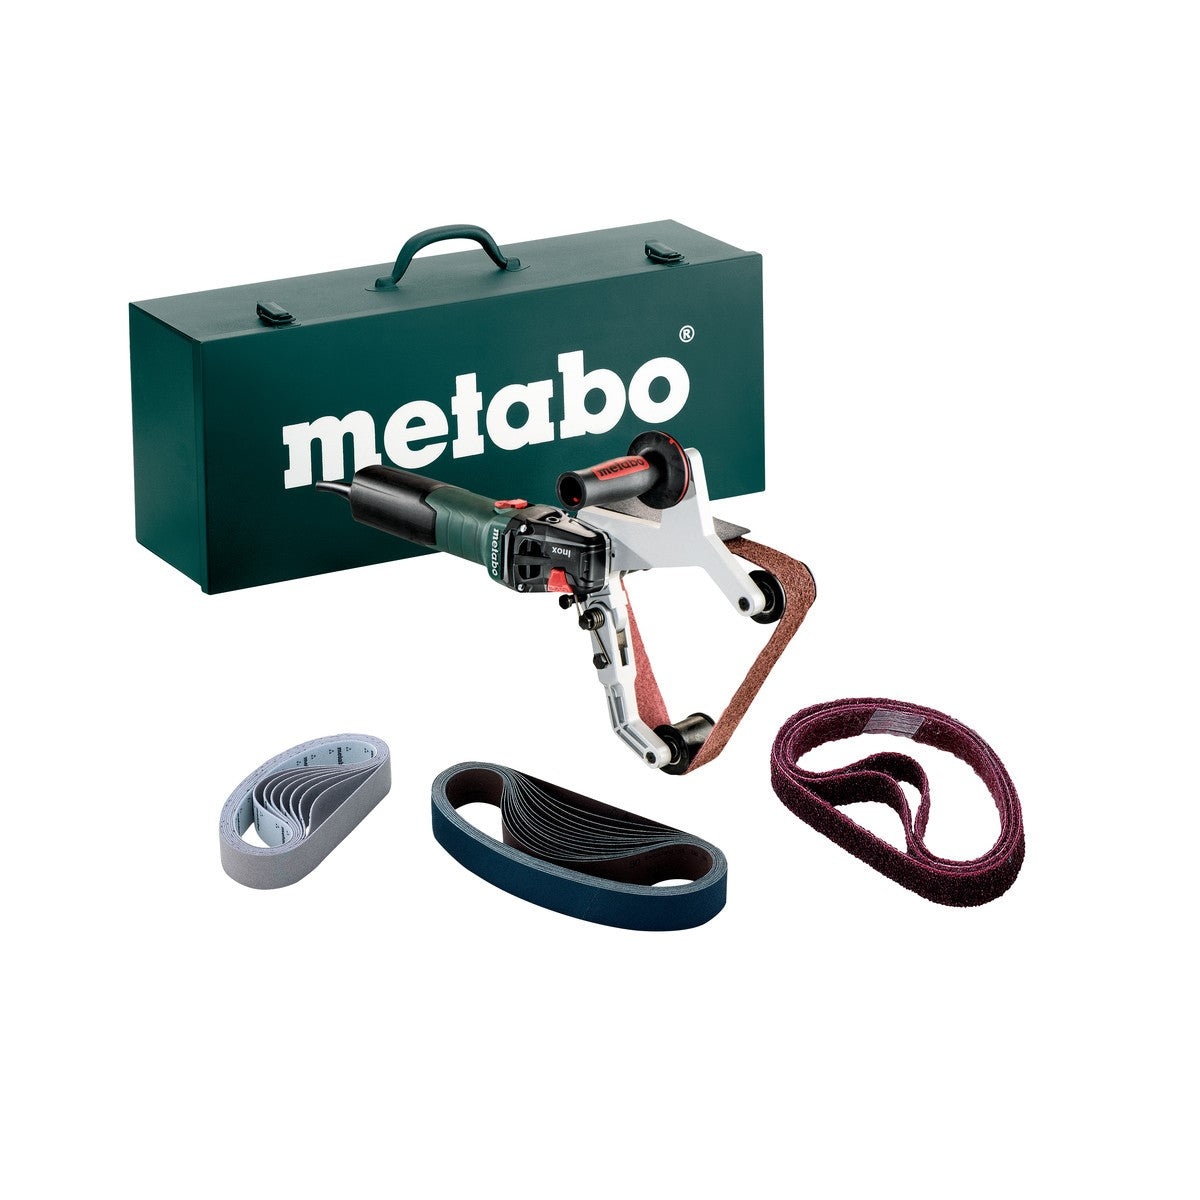 Metabo (602243620) RBE 15180 Tube Belt Sander Set 135 Amp